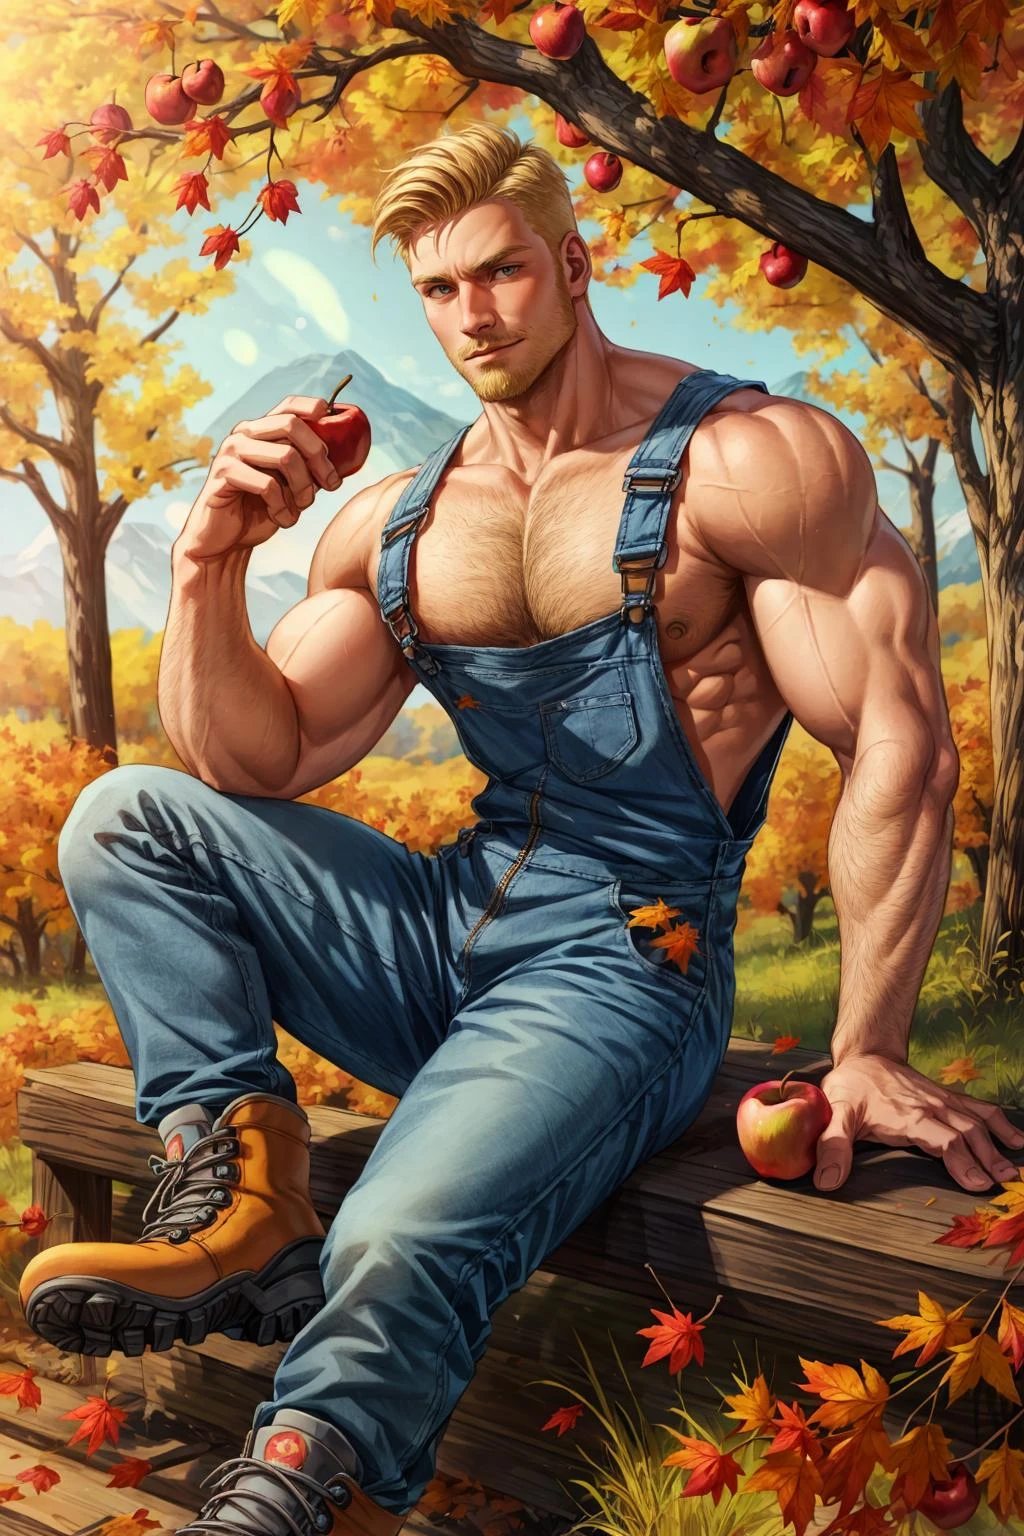 1 мальчик, мускулистый мужчина в комбинезоне и походных ботинках, светлые волосы, волосатая грудь, осень, падающие листья, Яблочный сад, теплое освещение,